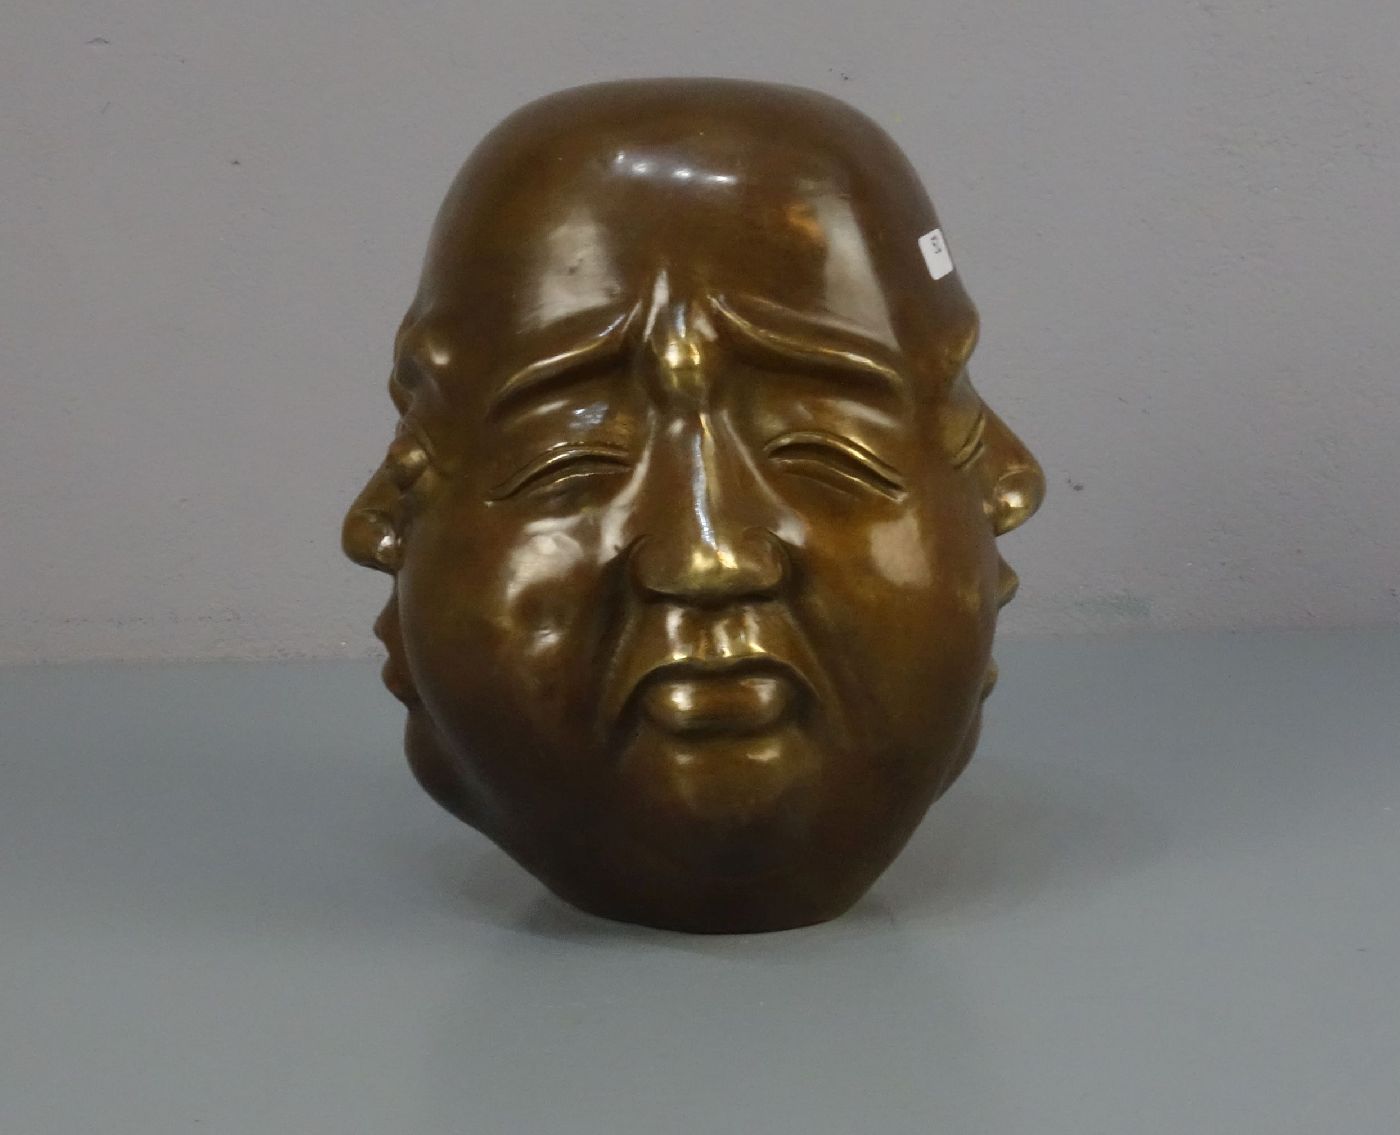 CHINESISCHER BILDHAUER des 20. Jh., Skulptur / sculpture: "Kopf mit vier Gesichtern", Bronze, - Bild 4 aus 5